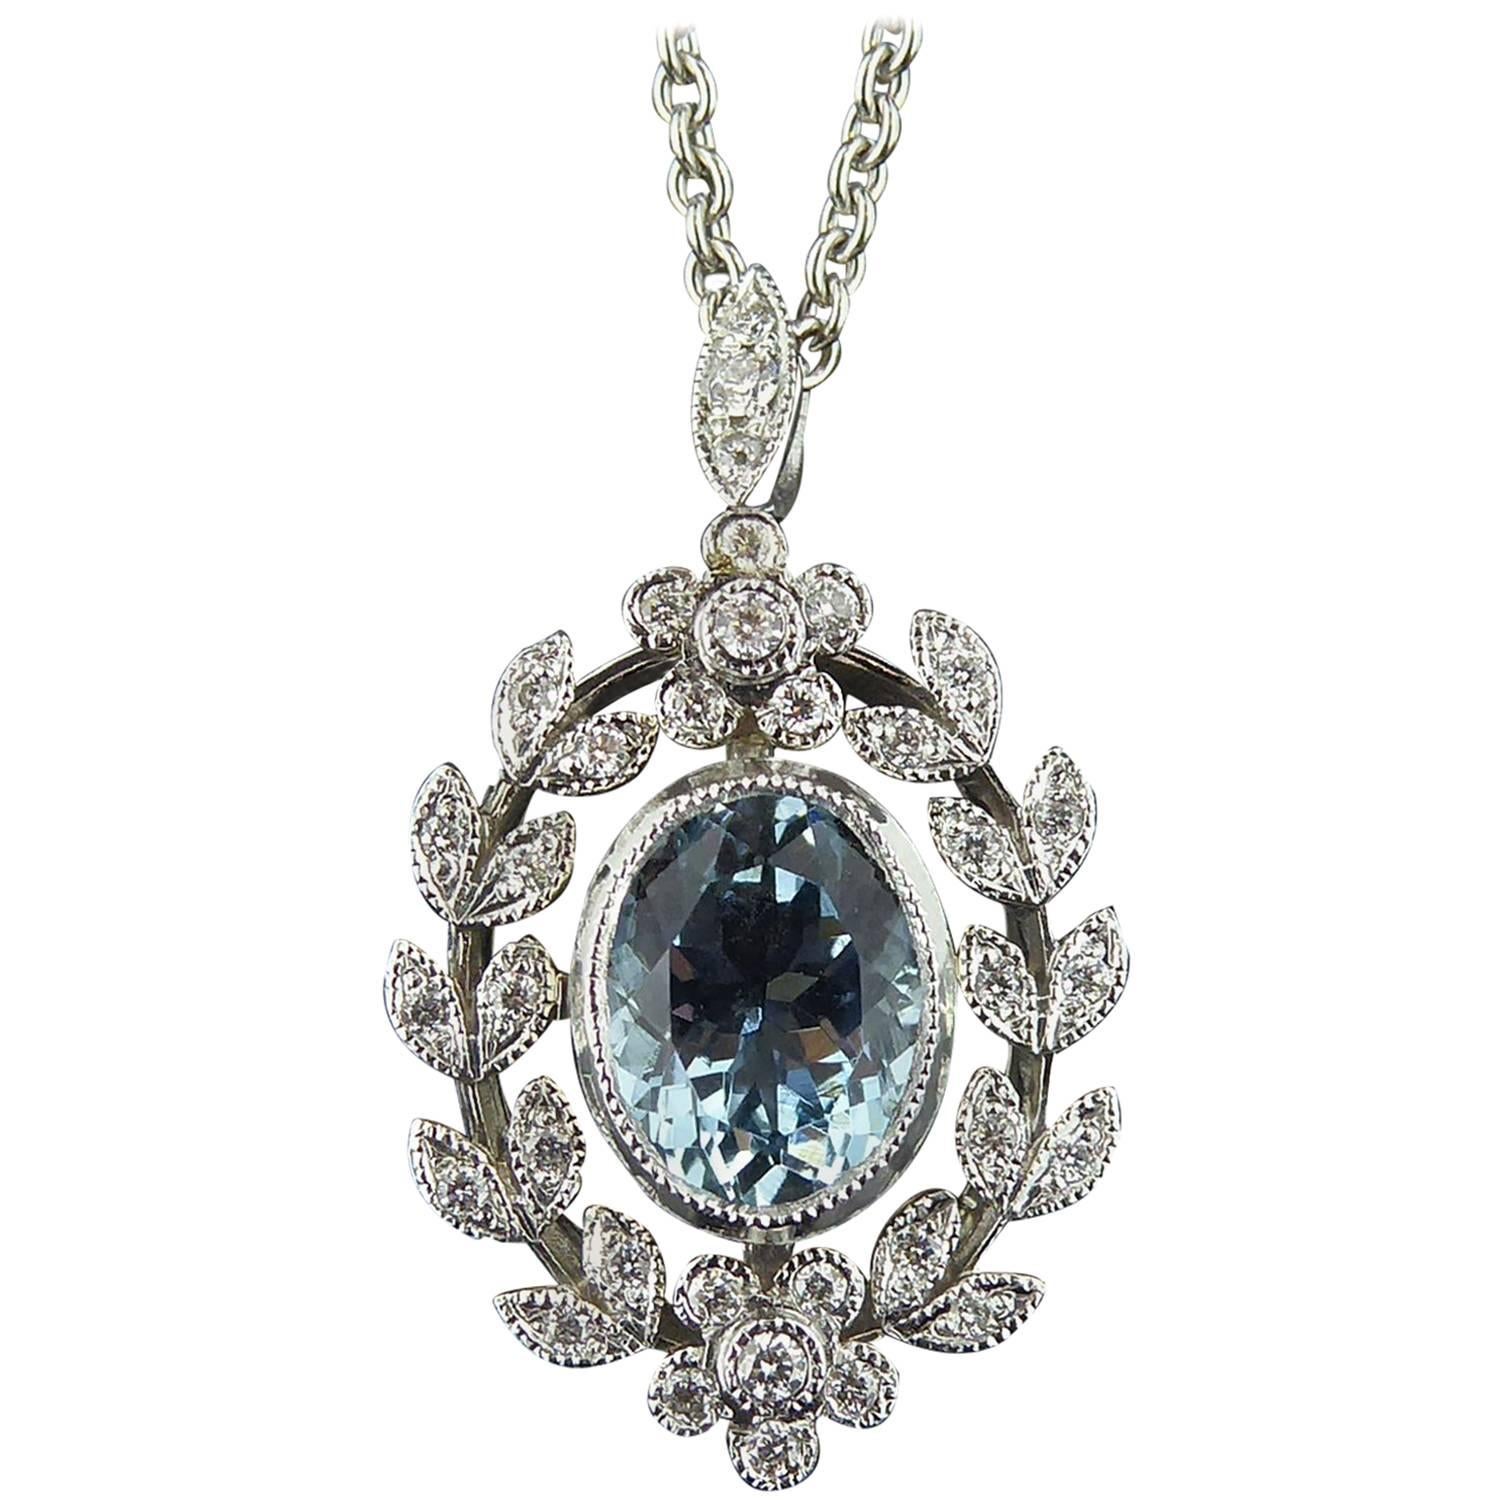 Antique Belle Époque Style 1.70 Carat Aquamarine and Diamond Pendant in 18 Carat